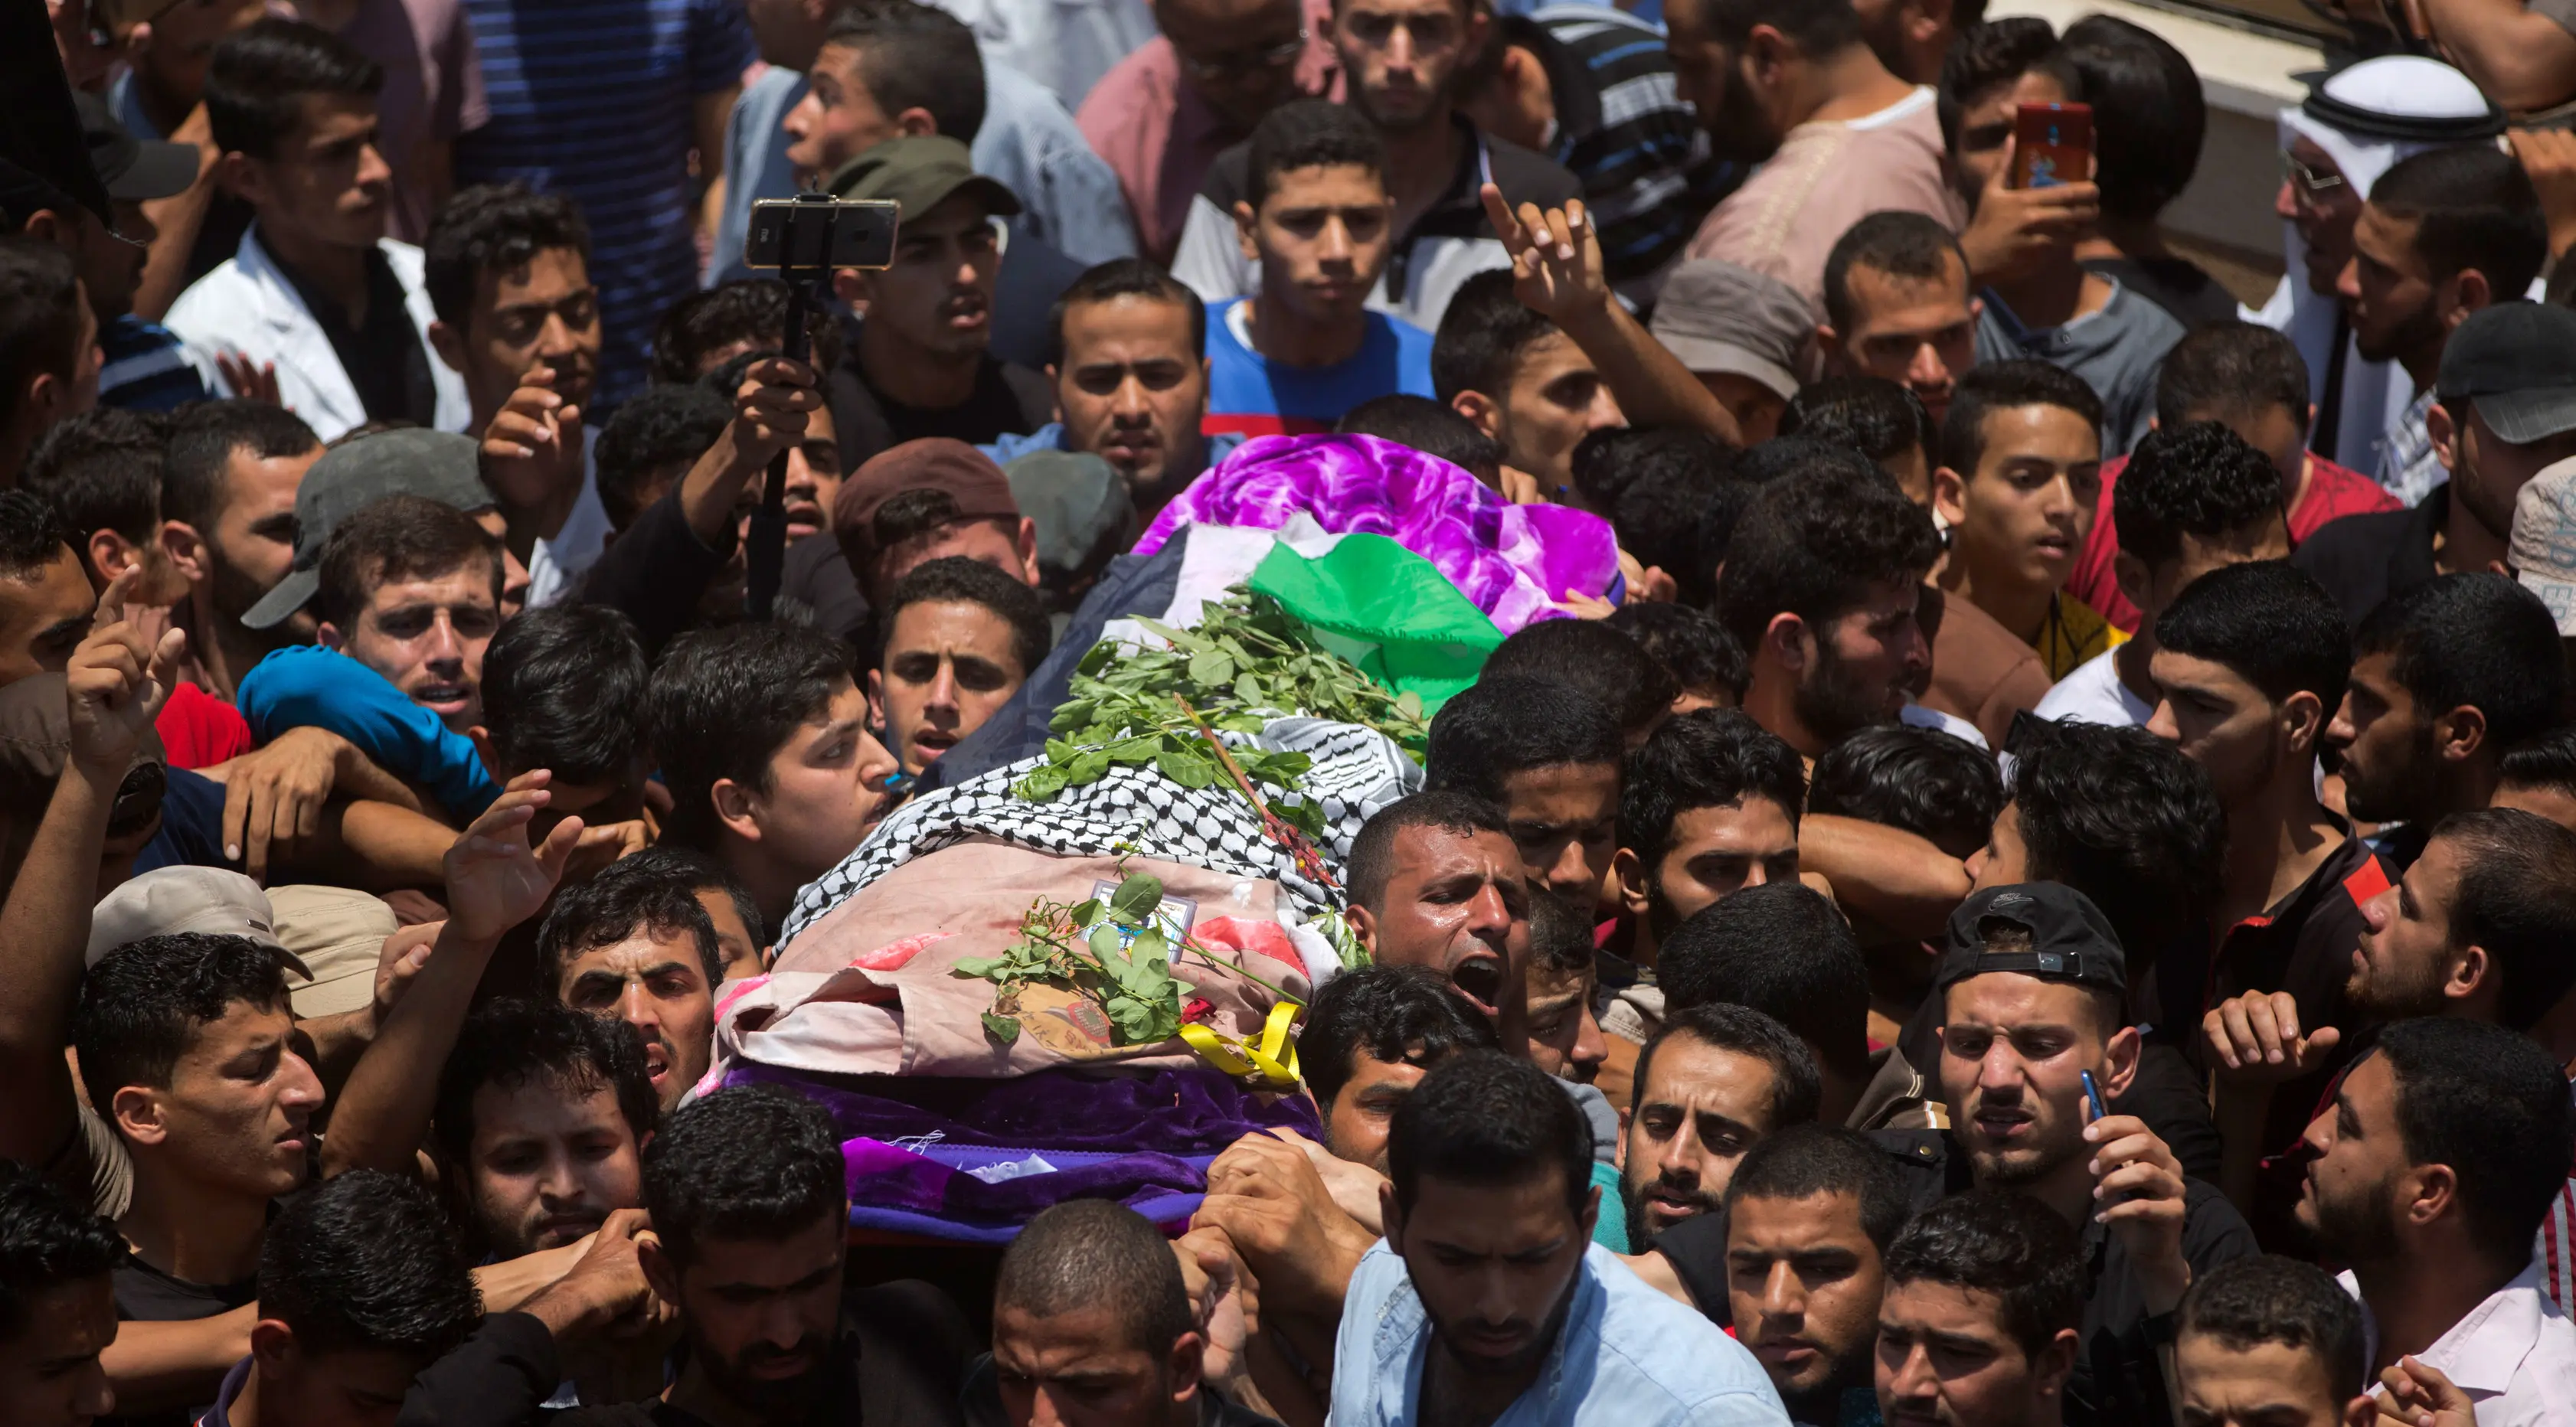 Ribuan pelayat membawa jasad perawat Palestina, Razan Najjar saat pemakamannya di Kota Khan Younis, Jalur Gaza Selatan, Sabtu (2/6). Gadis 21 tahun tersebut terbunuh oleh tembakan Israel pada Jumat, 1 Juni 2018. (AP Photo/Khalil Hamra)